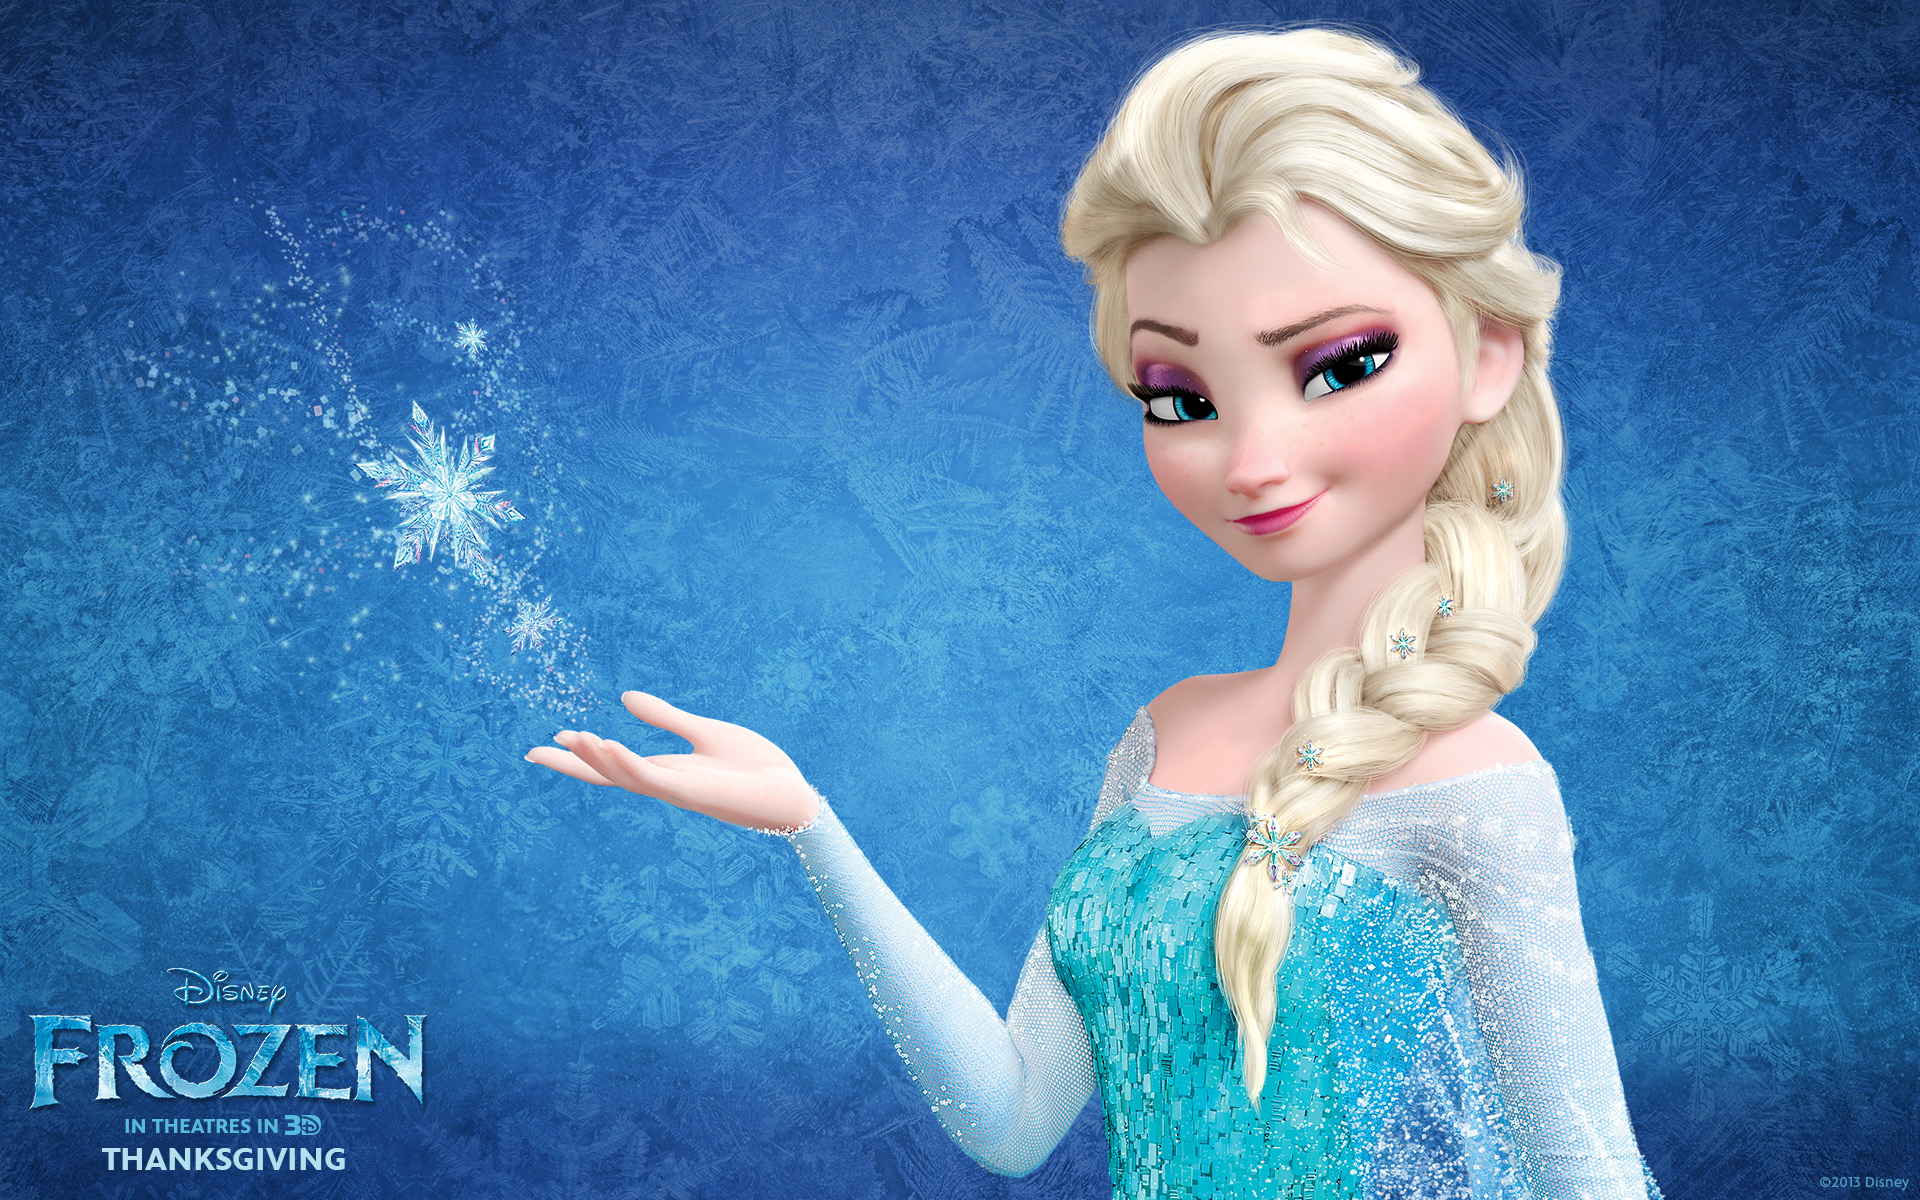 Snow Queen Elsa in Frozen Wallpapers | Wallpapers HD